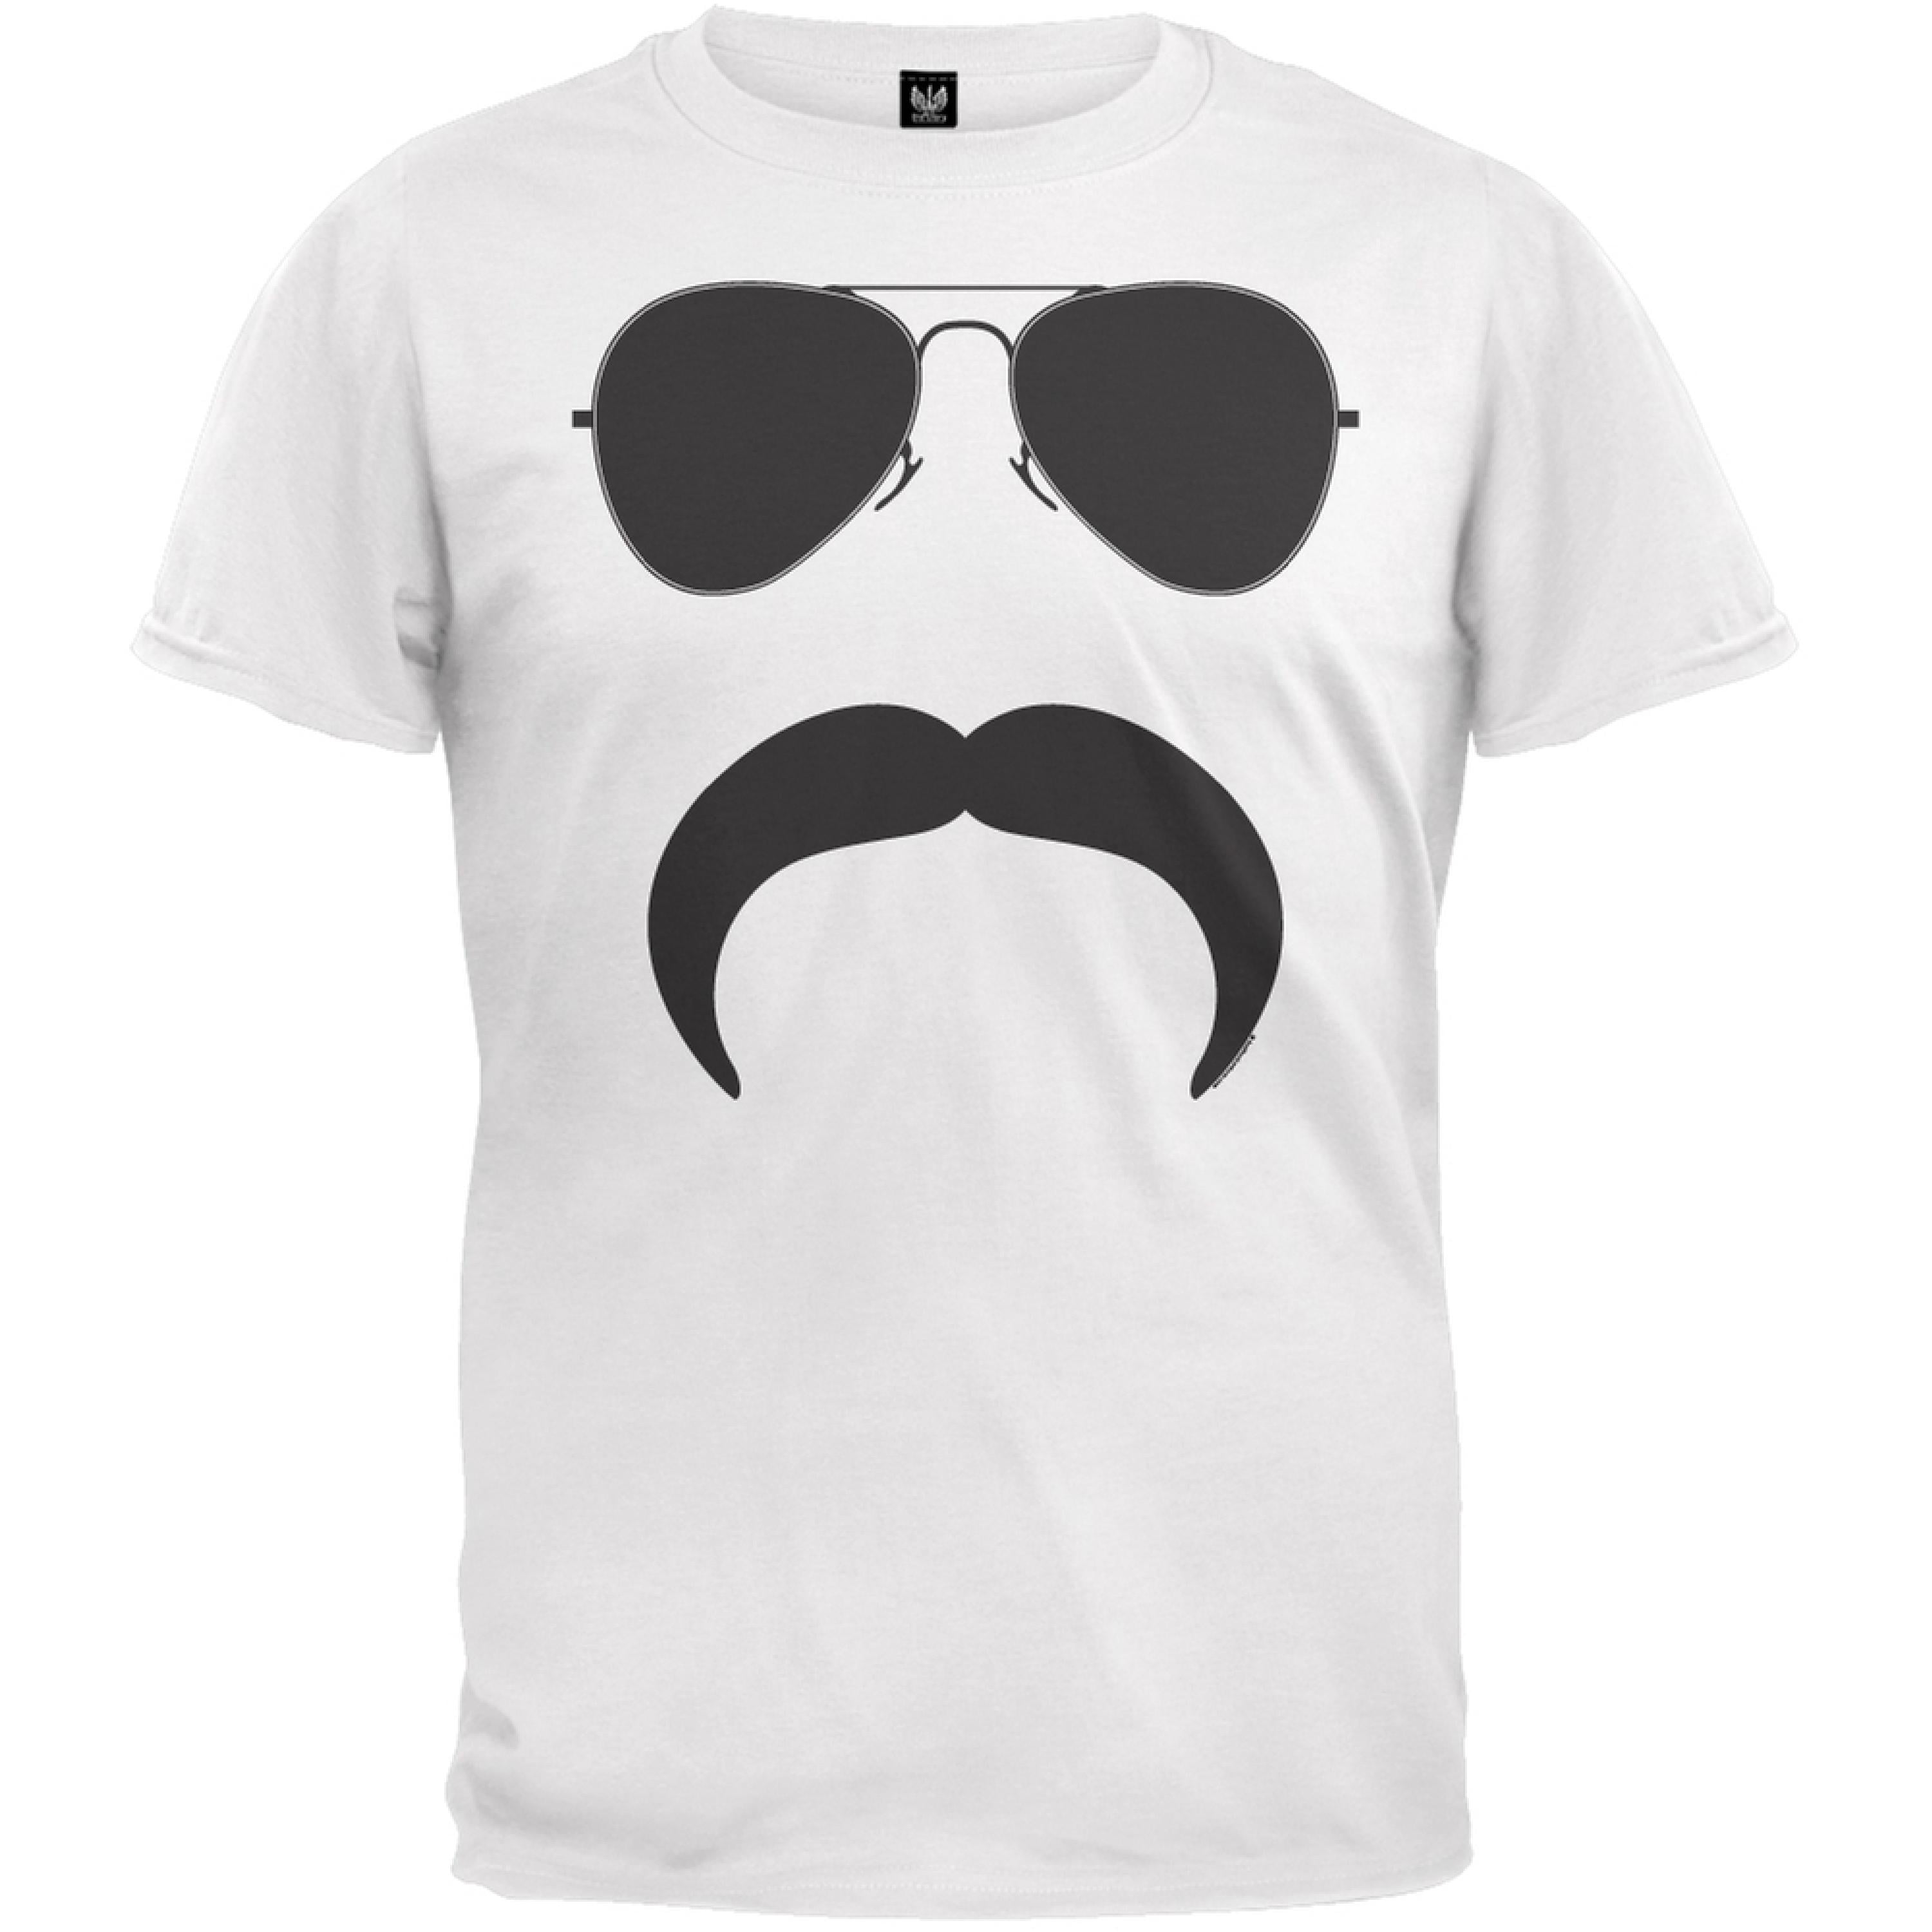 Aviator Mustache Silhouette T-Shirt - Walmart.com